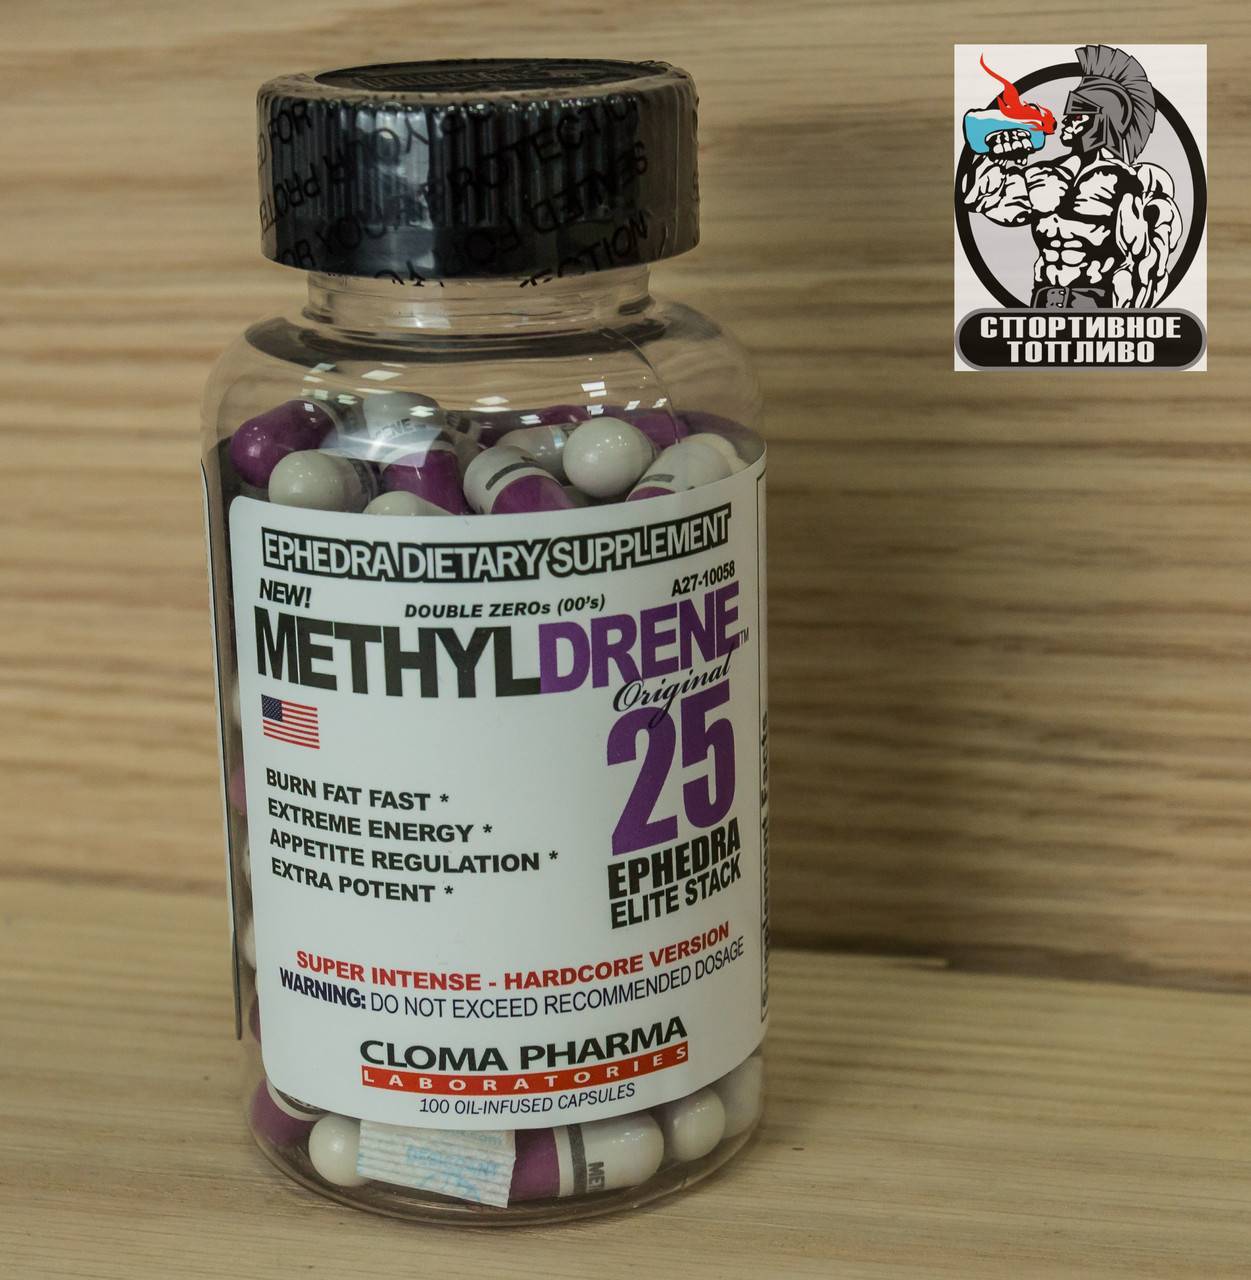 Как принимать метилдрен 25 для похудения. жиросжигатель methyldrene 25 от cloma pharma, как принимать, отзывы